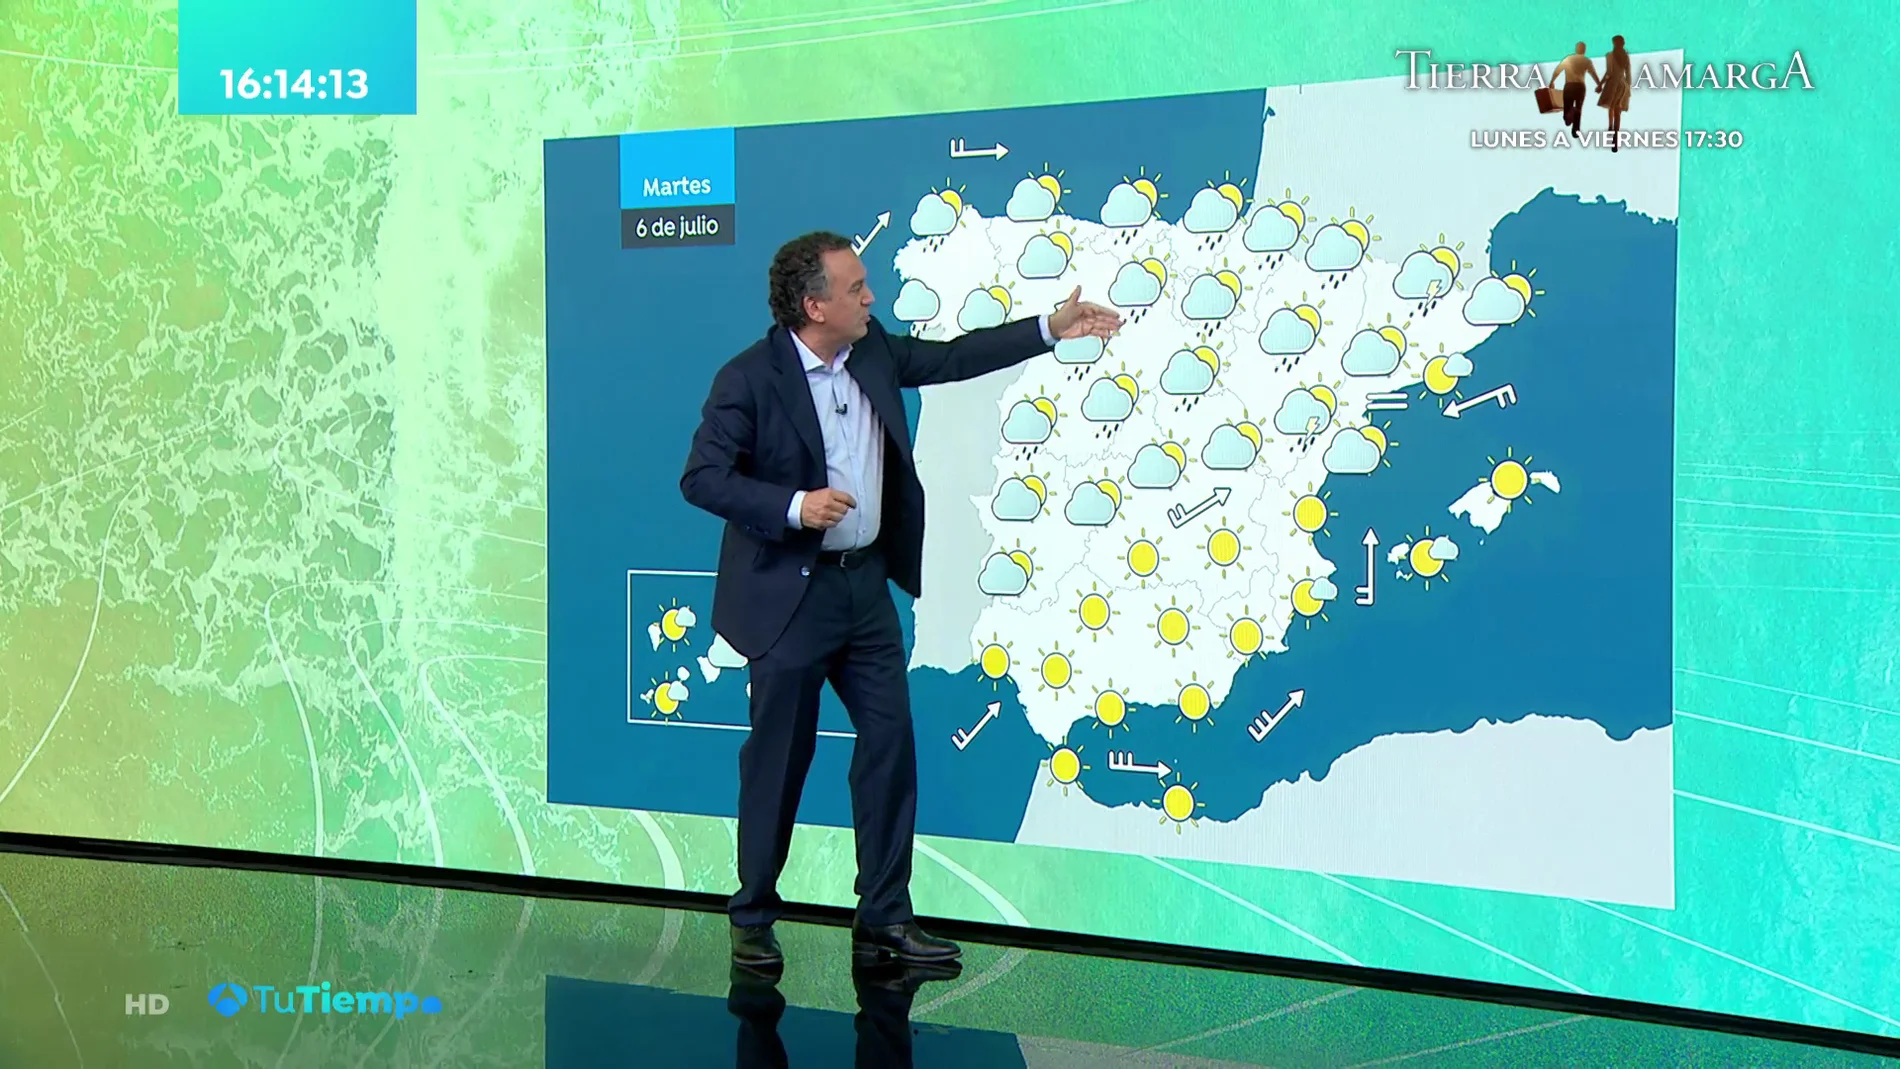 La previsión del tiempo hoy: Temperaturas elevadas en el tercio sudeste, cuenca del Ebro y nordeste de Mallorca